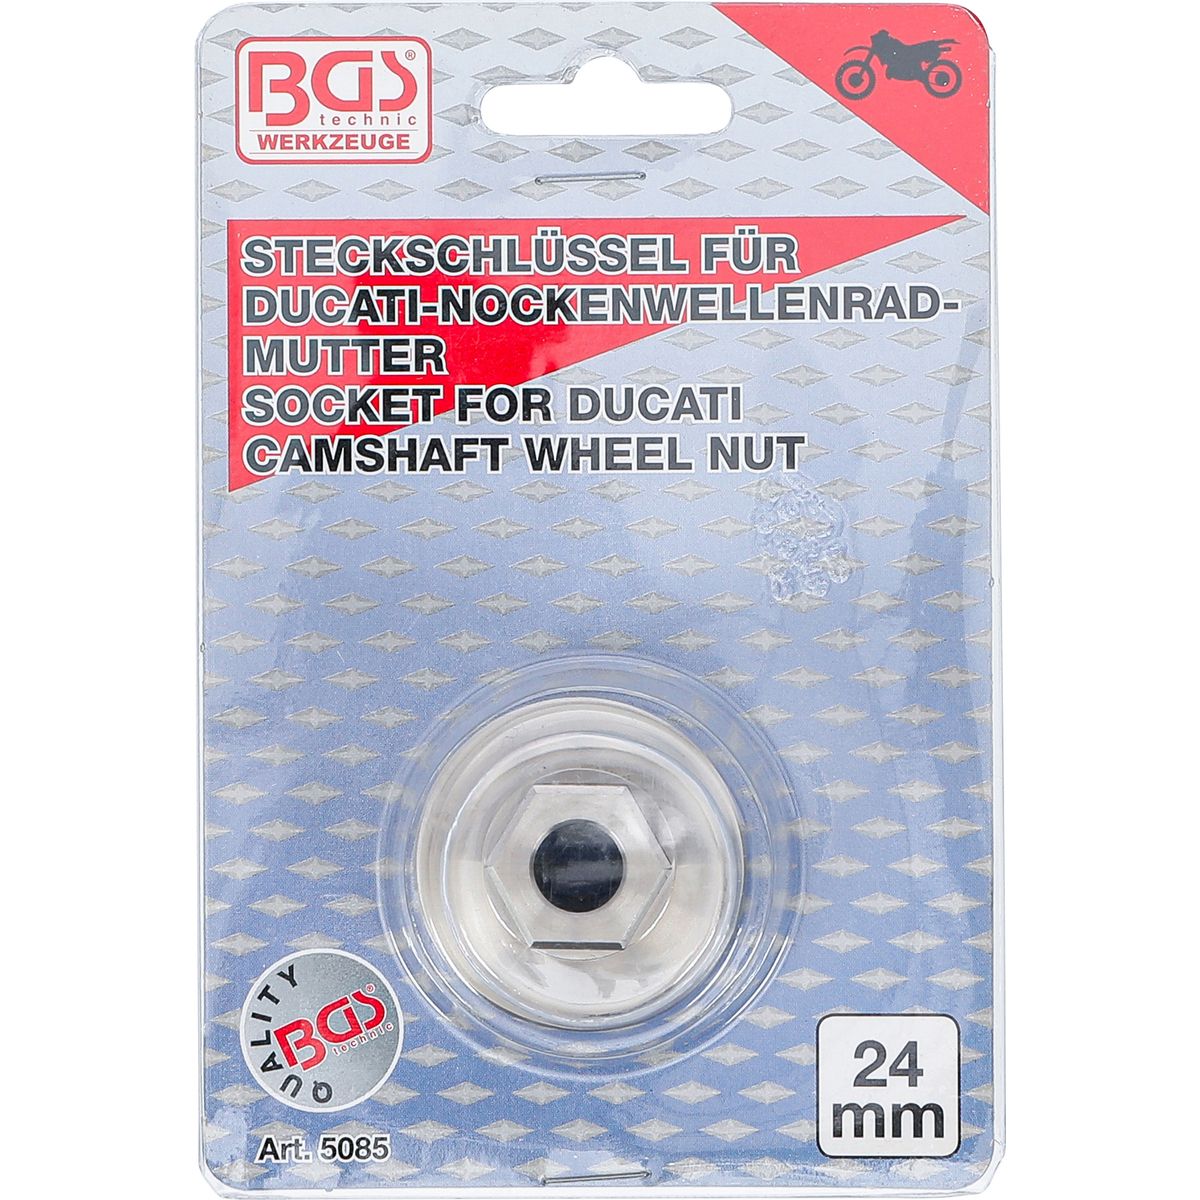 Special Socket | for Ducati Pully Nut Socket | 24 mm